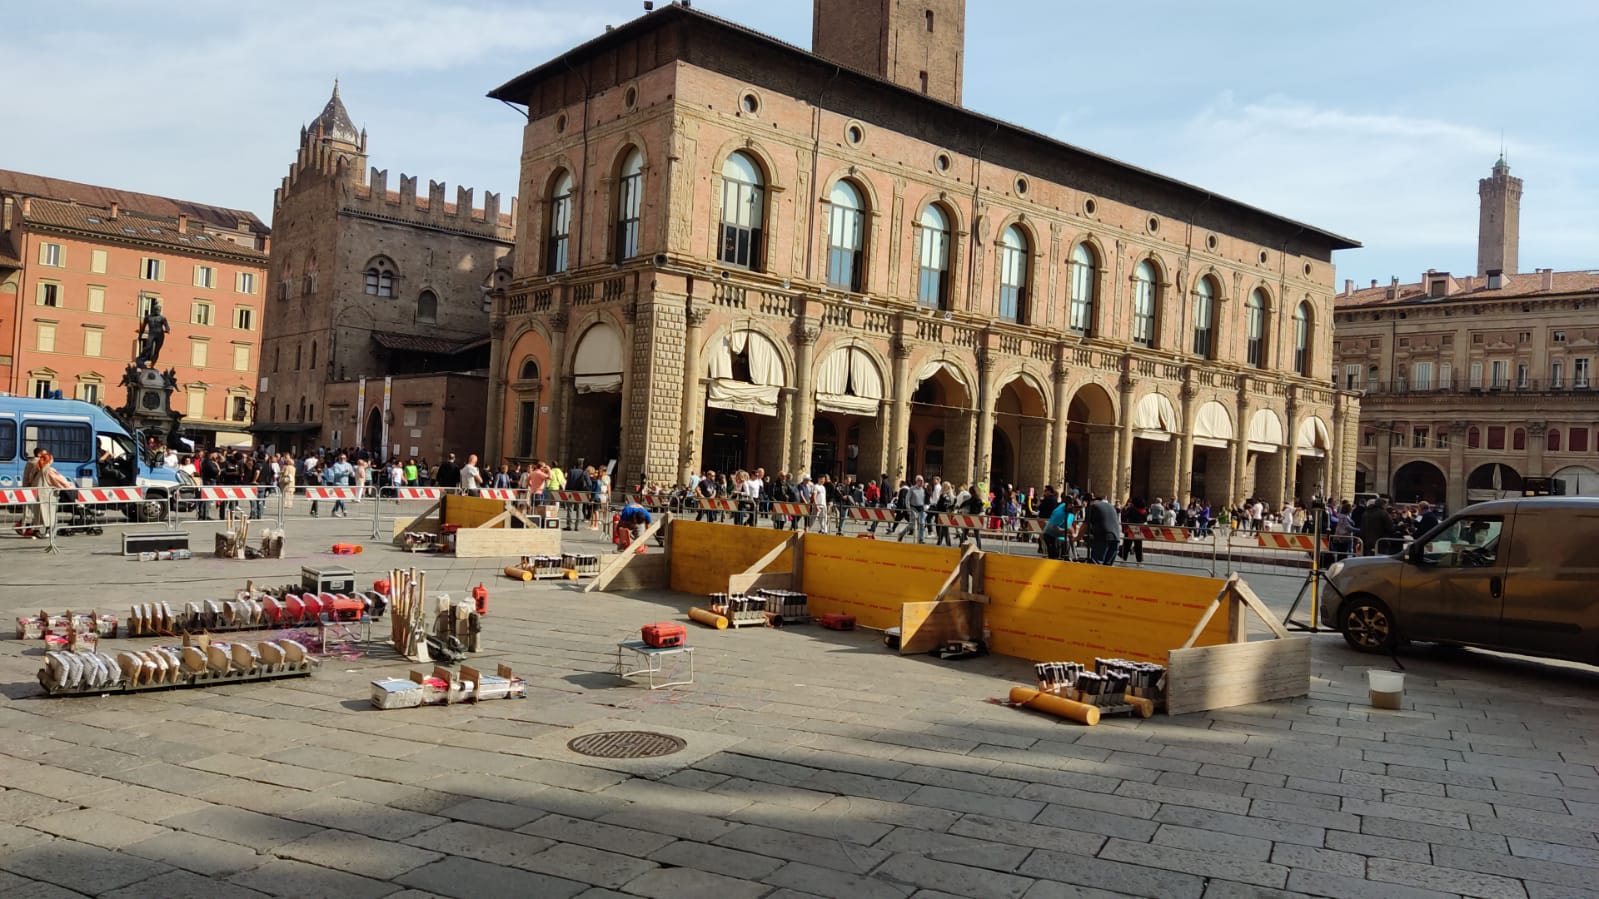 Spettacolo pirotecnico in piazza a Bologna, perché non prendere esempio per la Festa della Bruna?